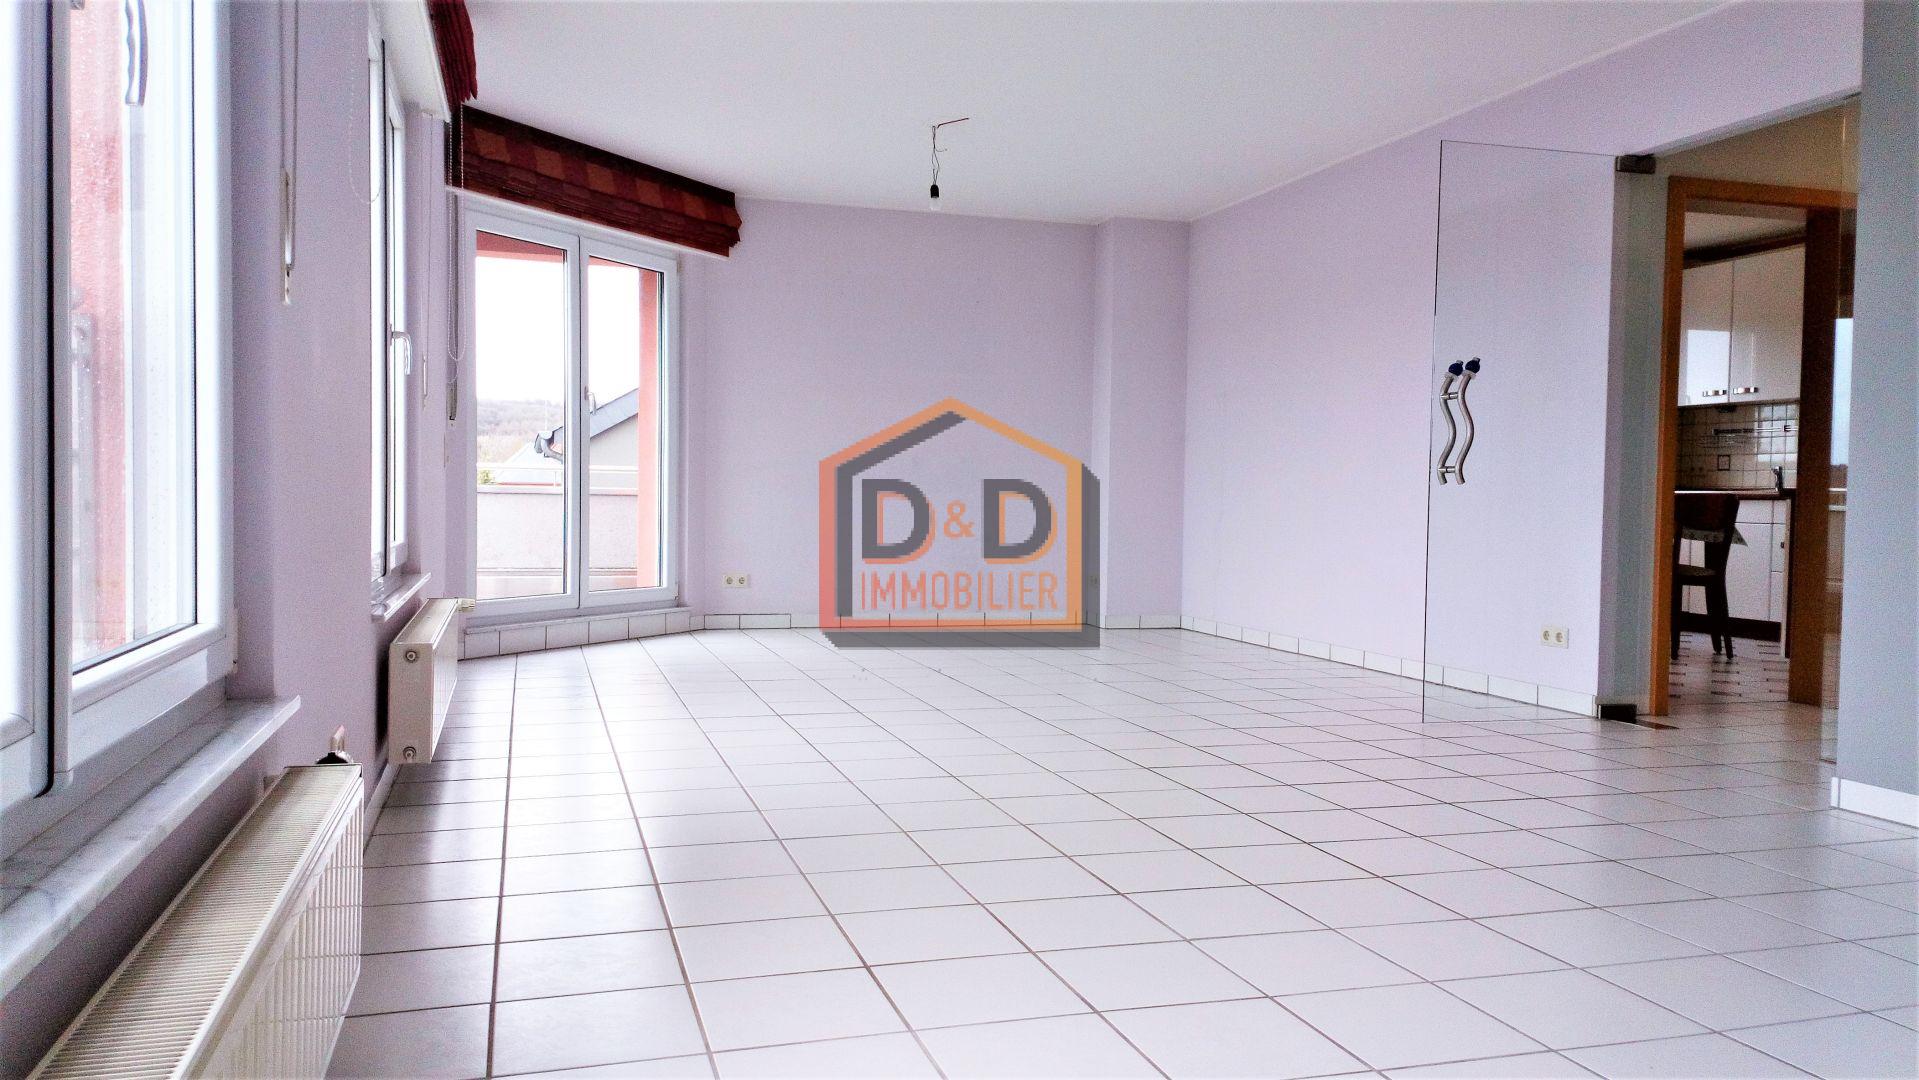 Appartement à Bascharage, 83 m², 2 chambres, 1 salle de bain, 1 500 €/mois